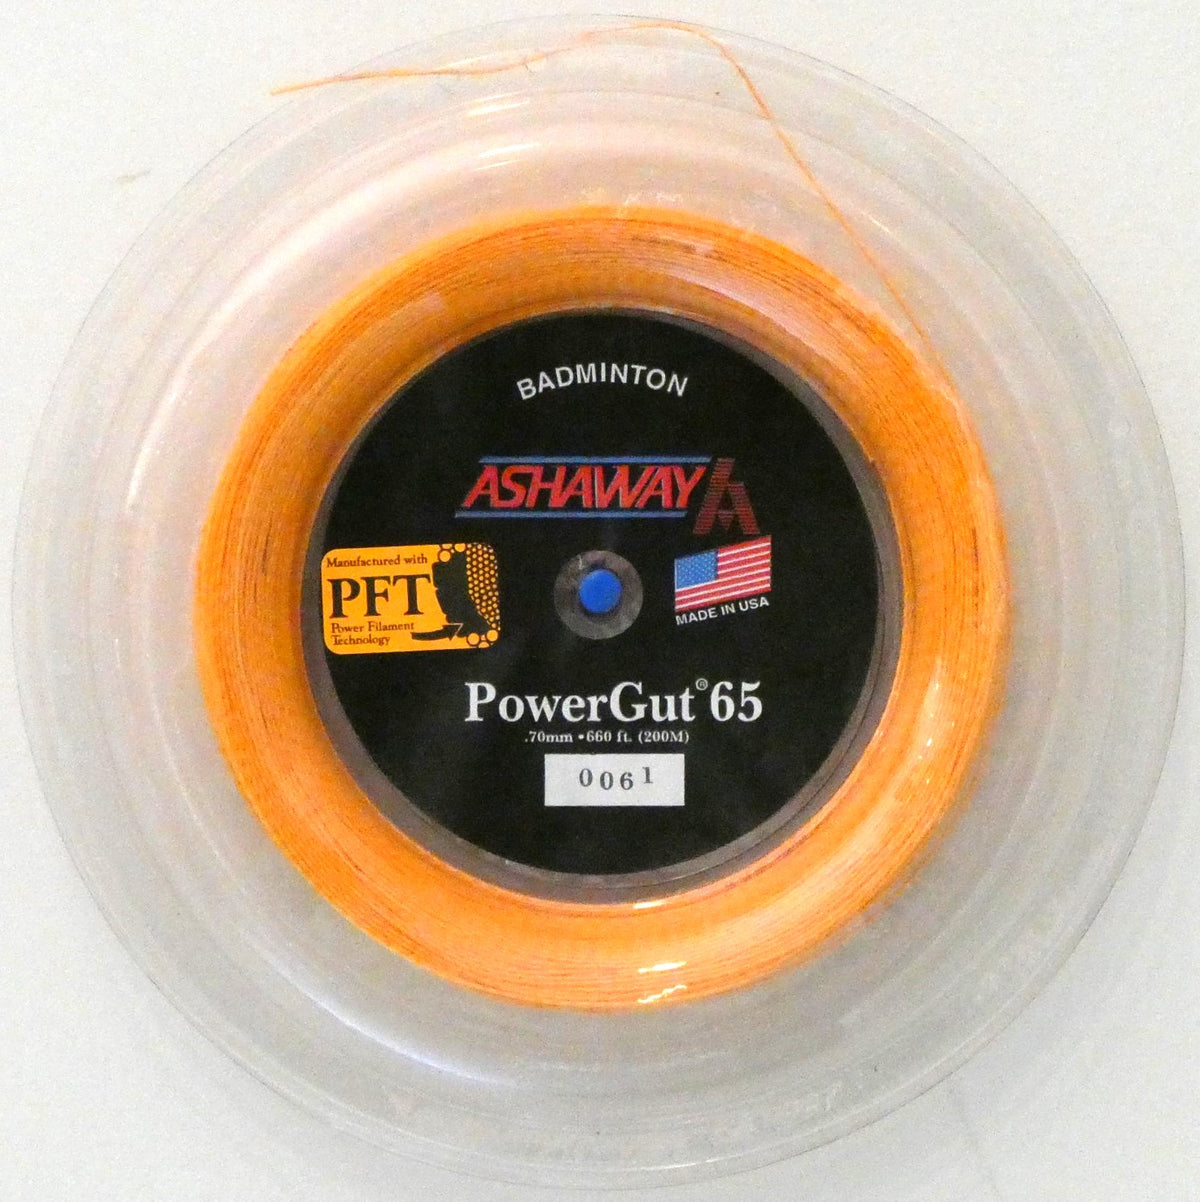 Ashaway PowerGut 65 Badminton String, Orange with red spiral, 200 M REEL